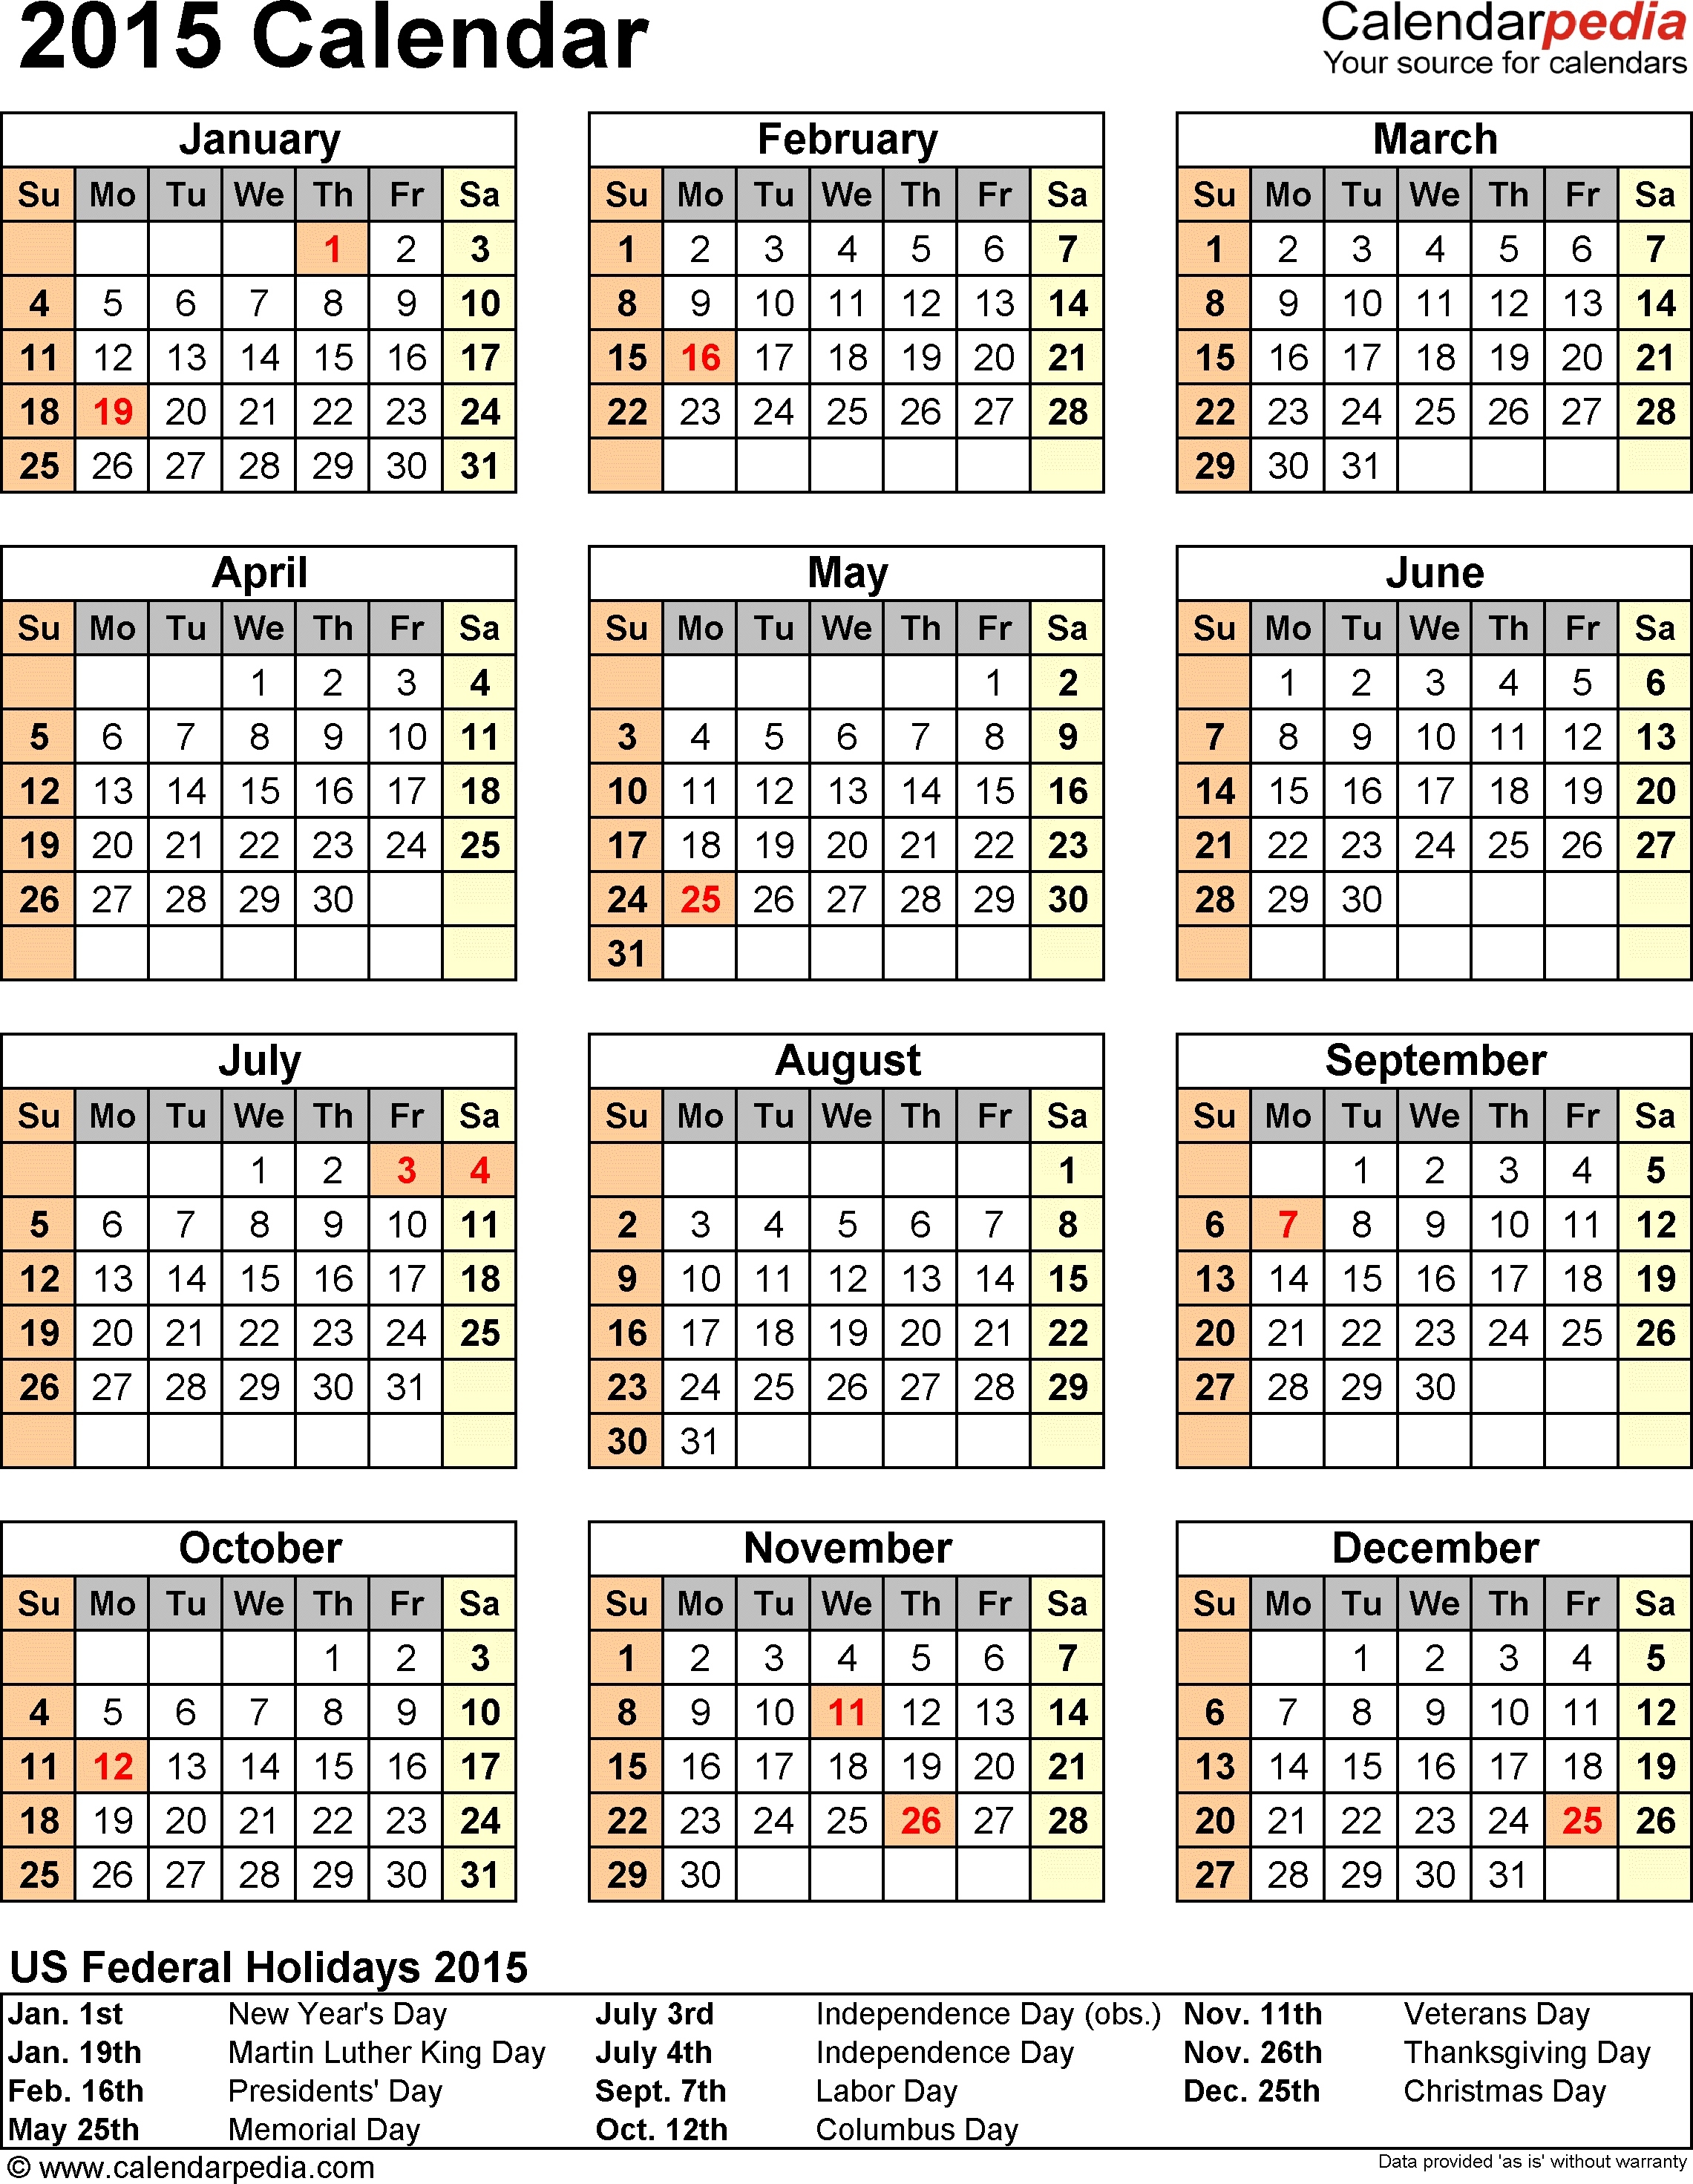 Quadax 2020 Julian Calendar | Calendar For Planning Quadax 2021 Julian Calendar